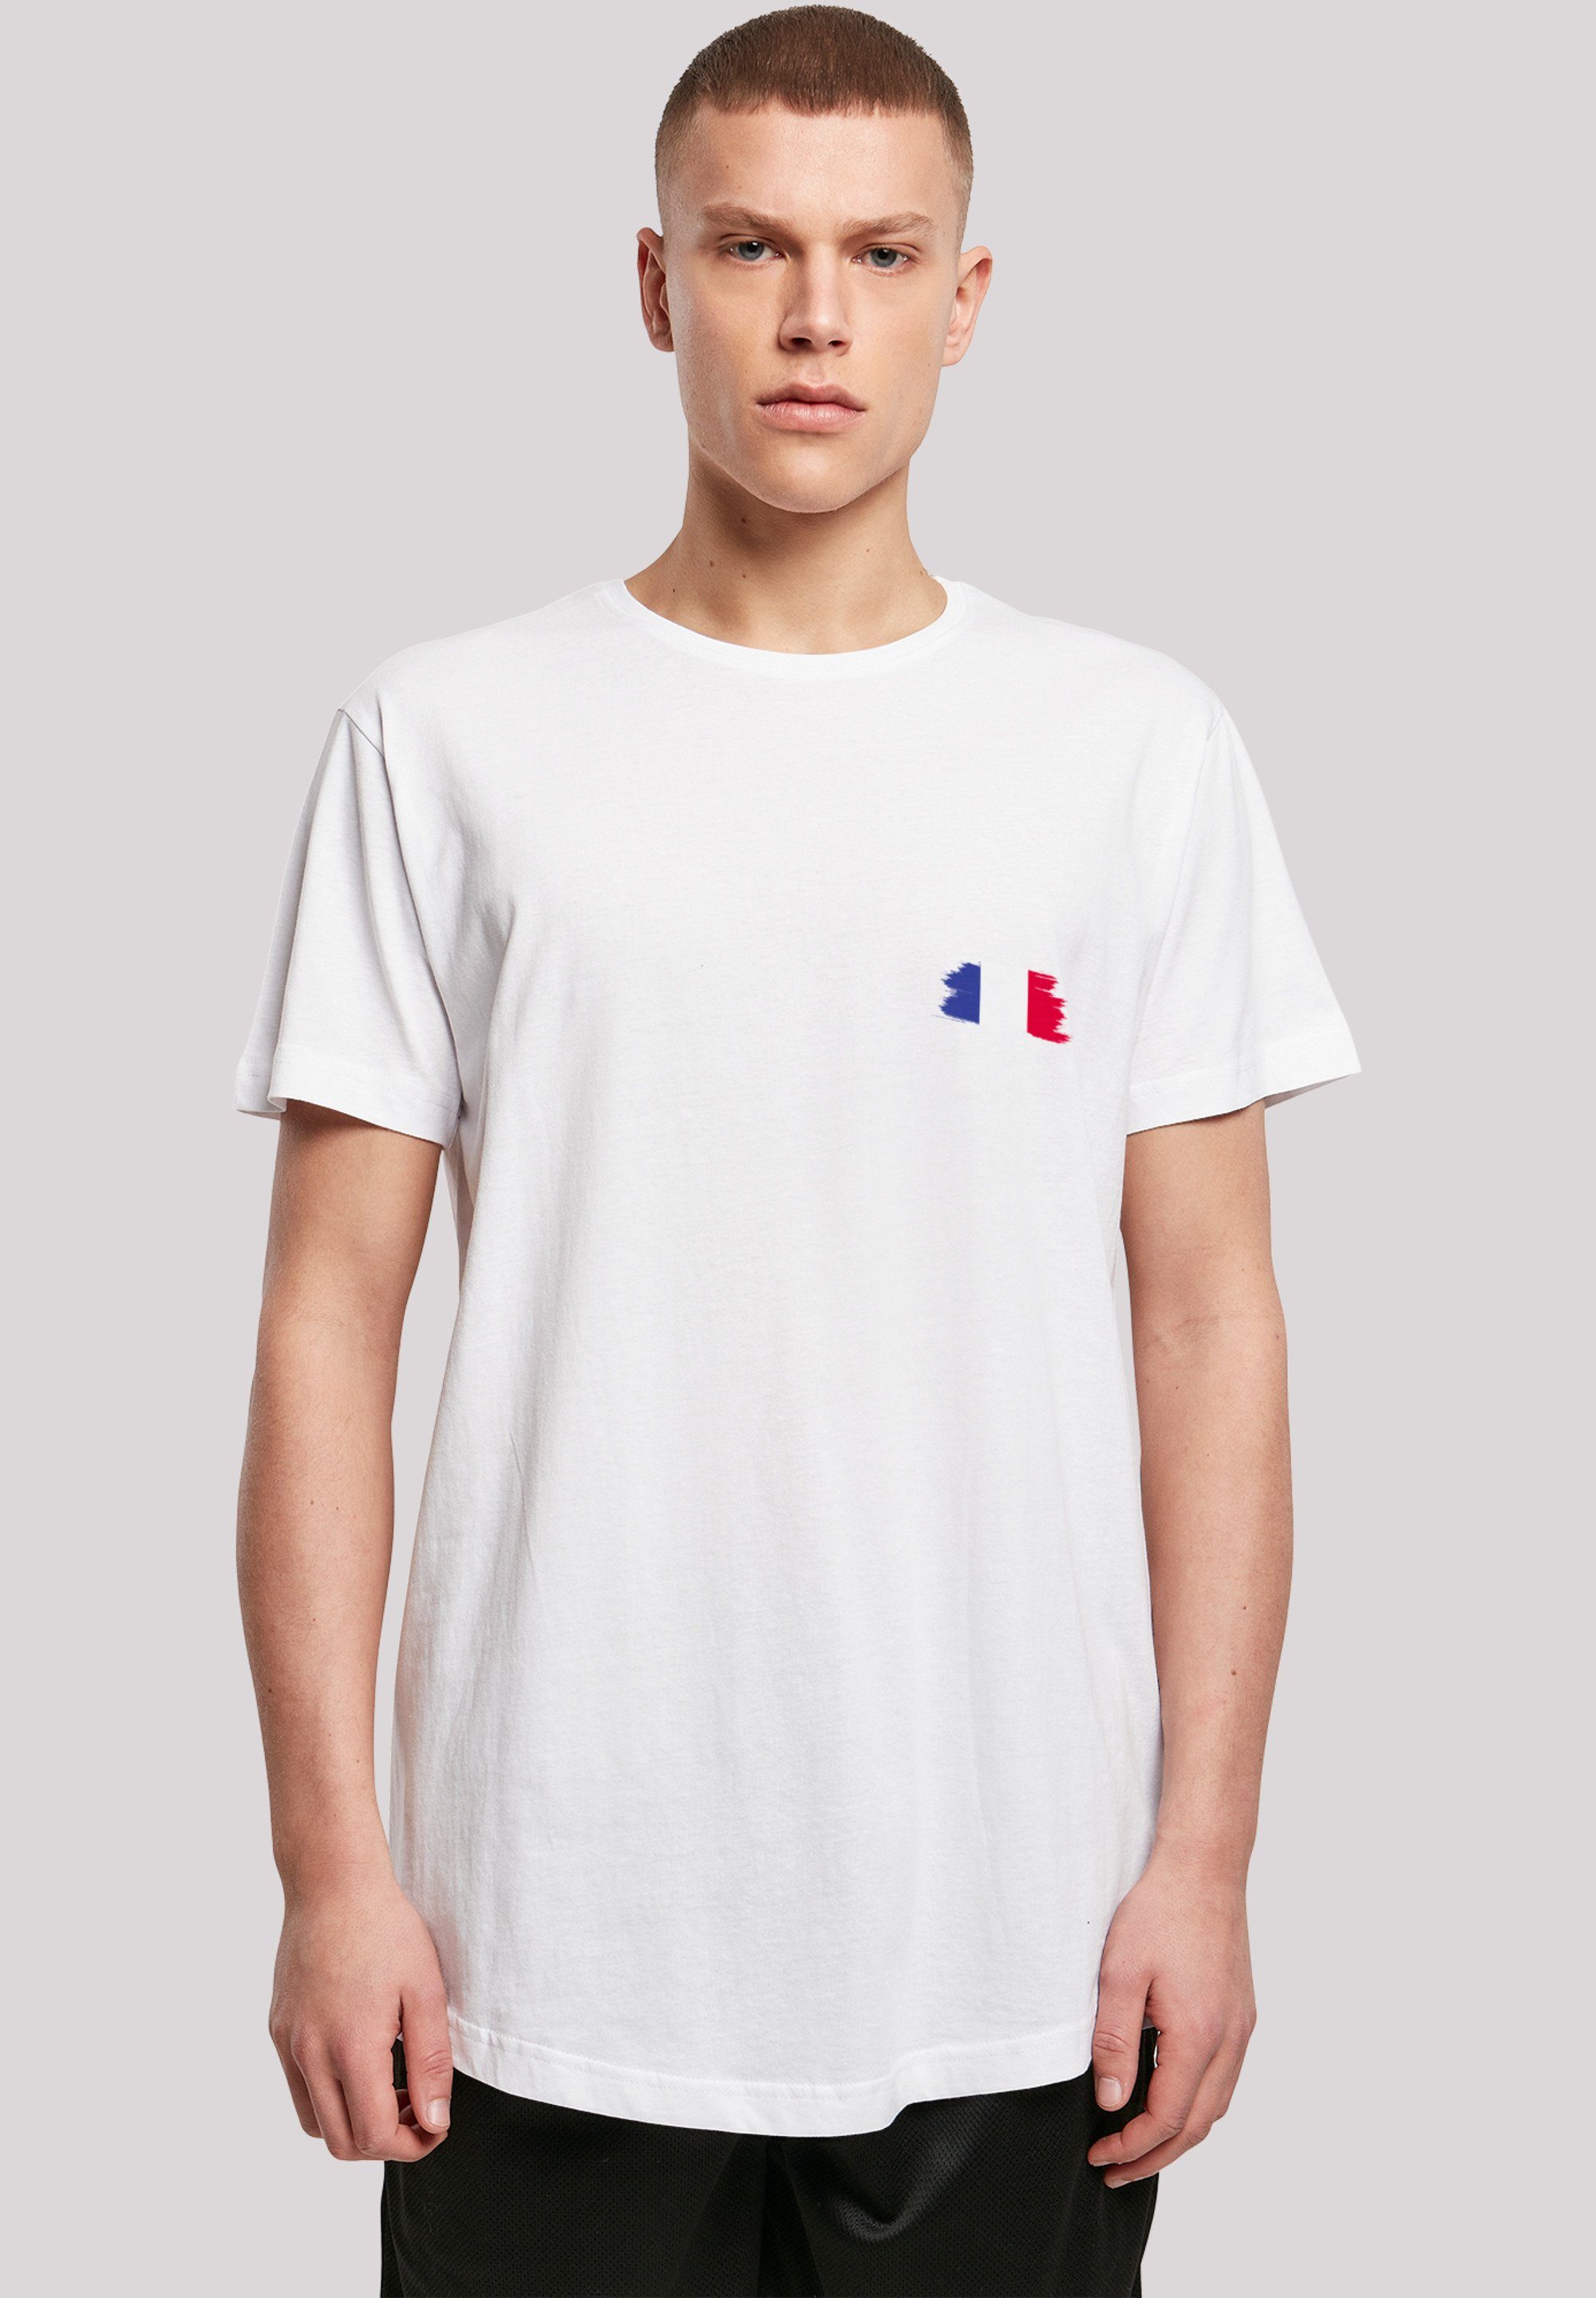 Flagge T-Shirt Frankreich France Print, weicher Tragekomfort Sehr mit hohem Baumwollstoff F4NT4STIC Fahne